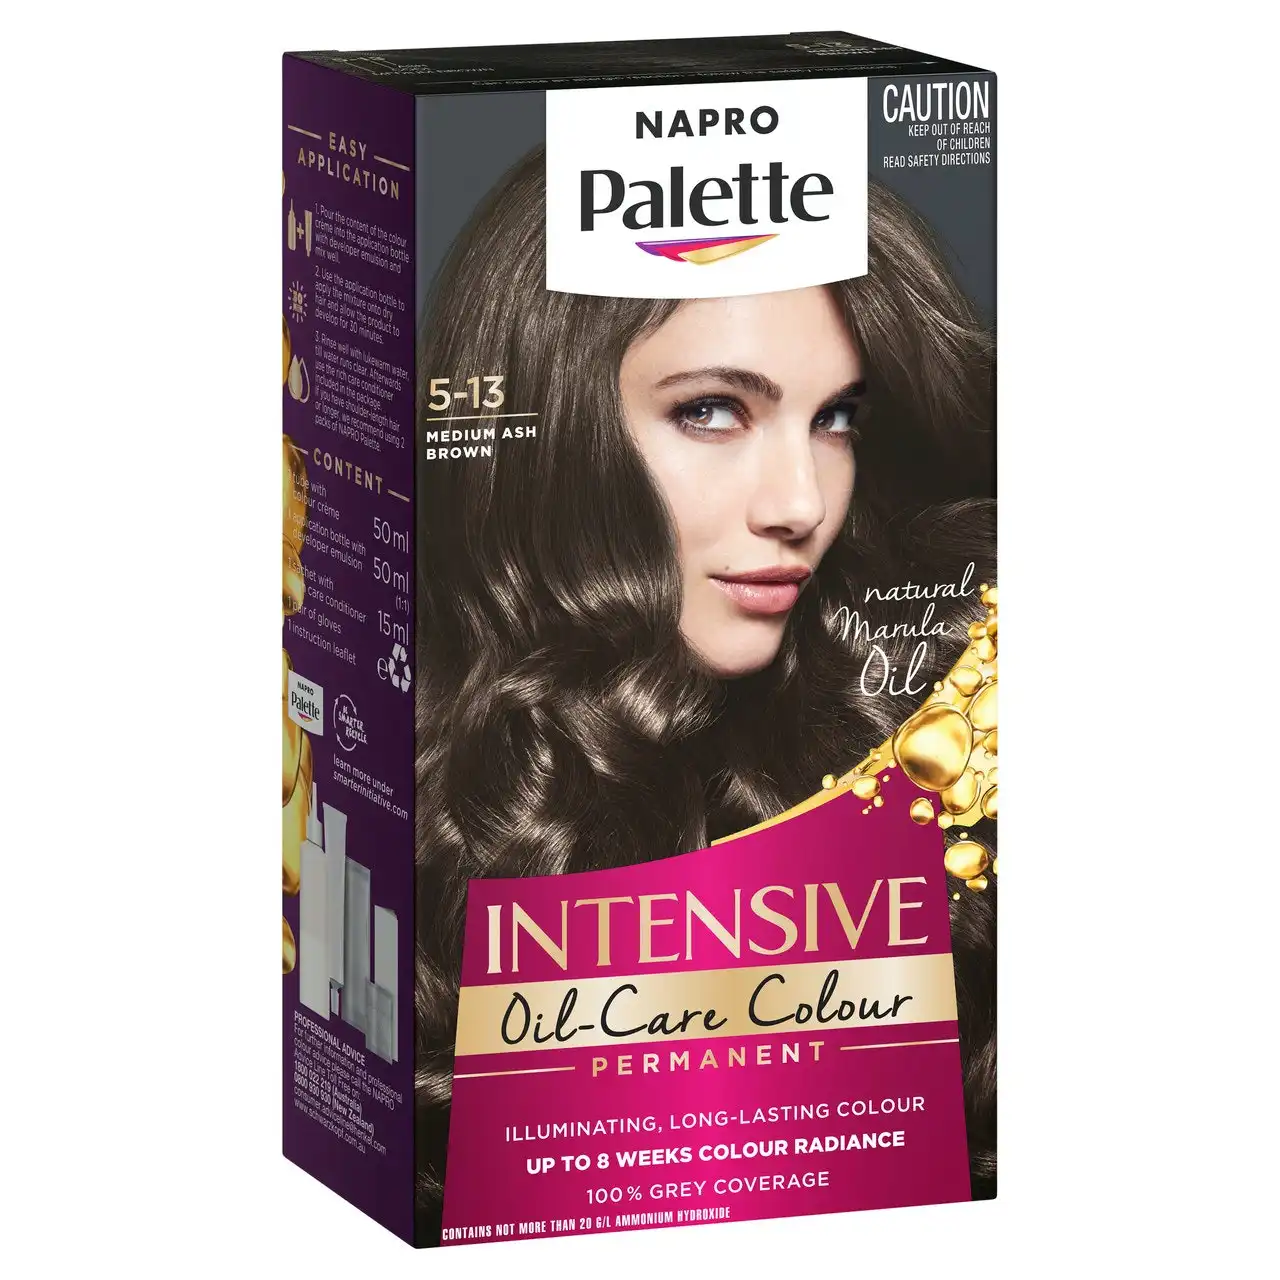 Napro Palette Intensive Creme Colour Permanent 5-13 Medium Ash Brown